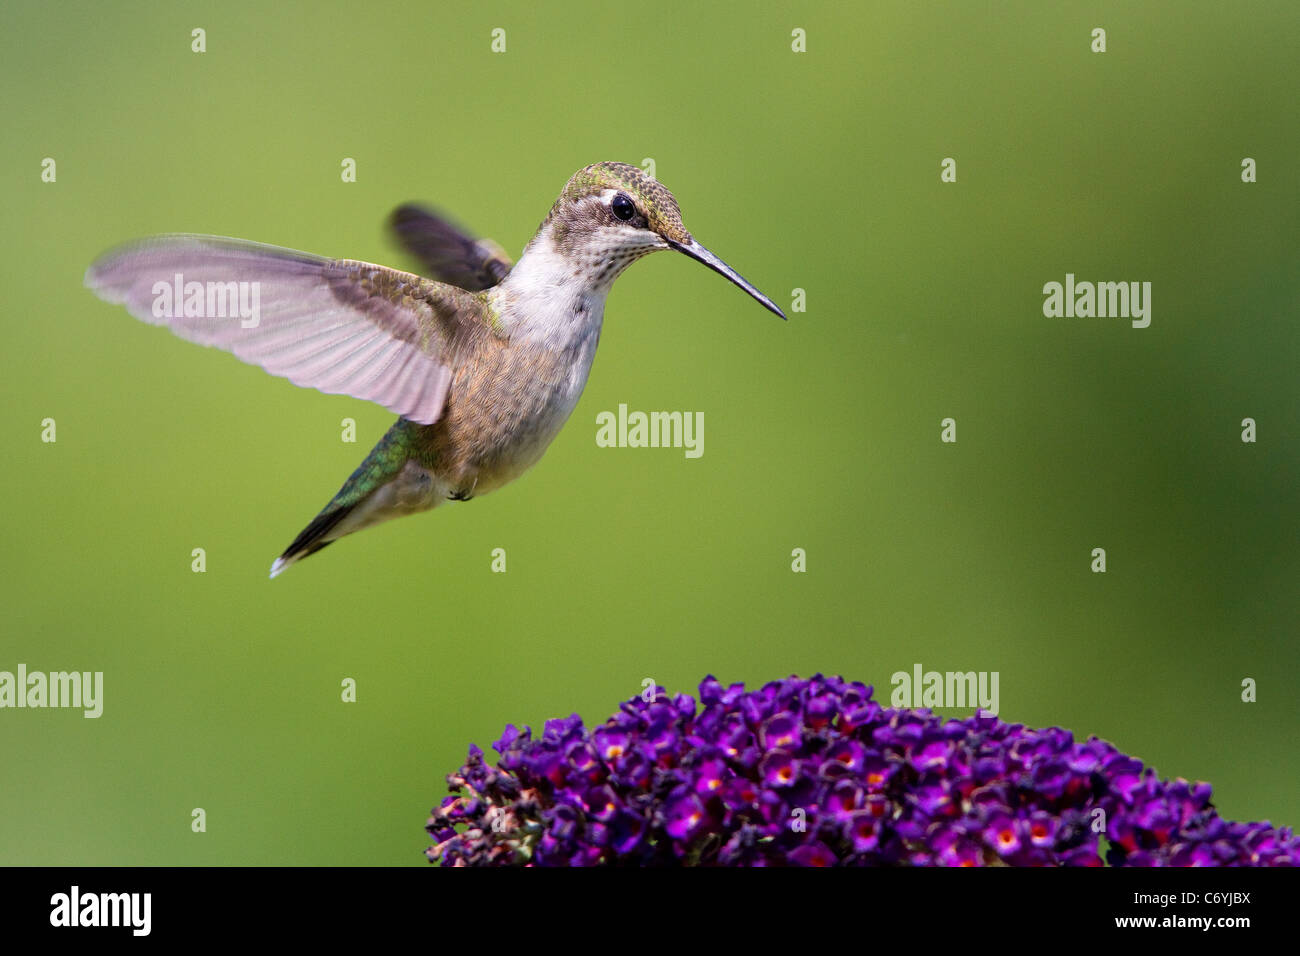 Hummingbird, Ruby throated hummingbird, ruby throated ronzio uccello femmina, archilochus colubris, posiziona il puntatore del mouse sopra un fiore. Foto Stock